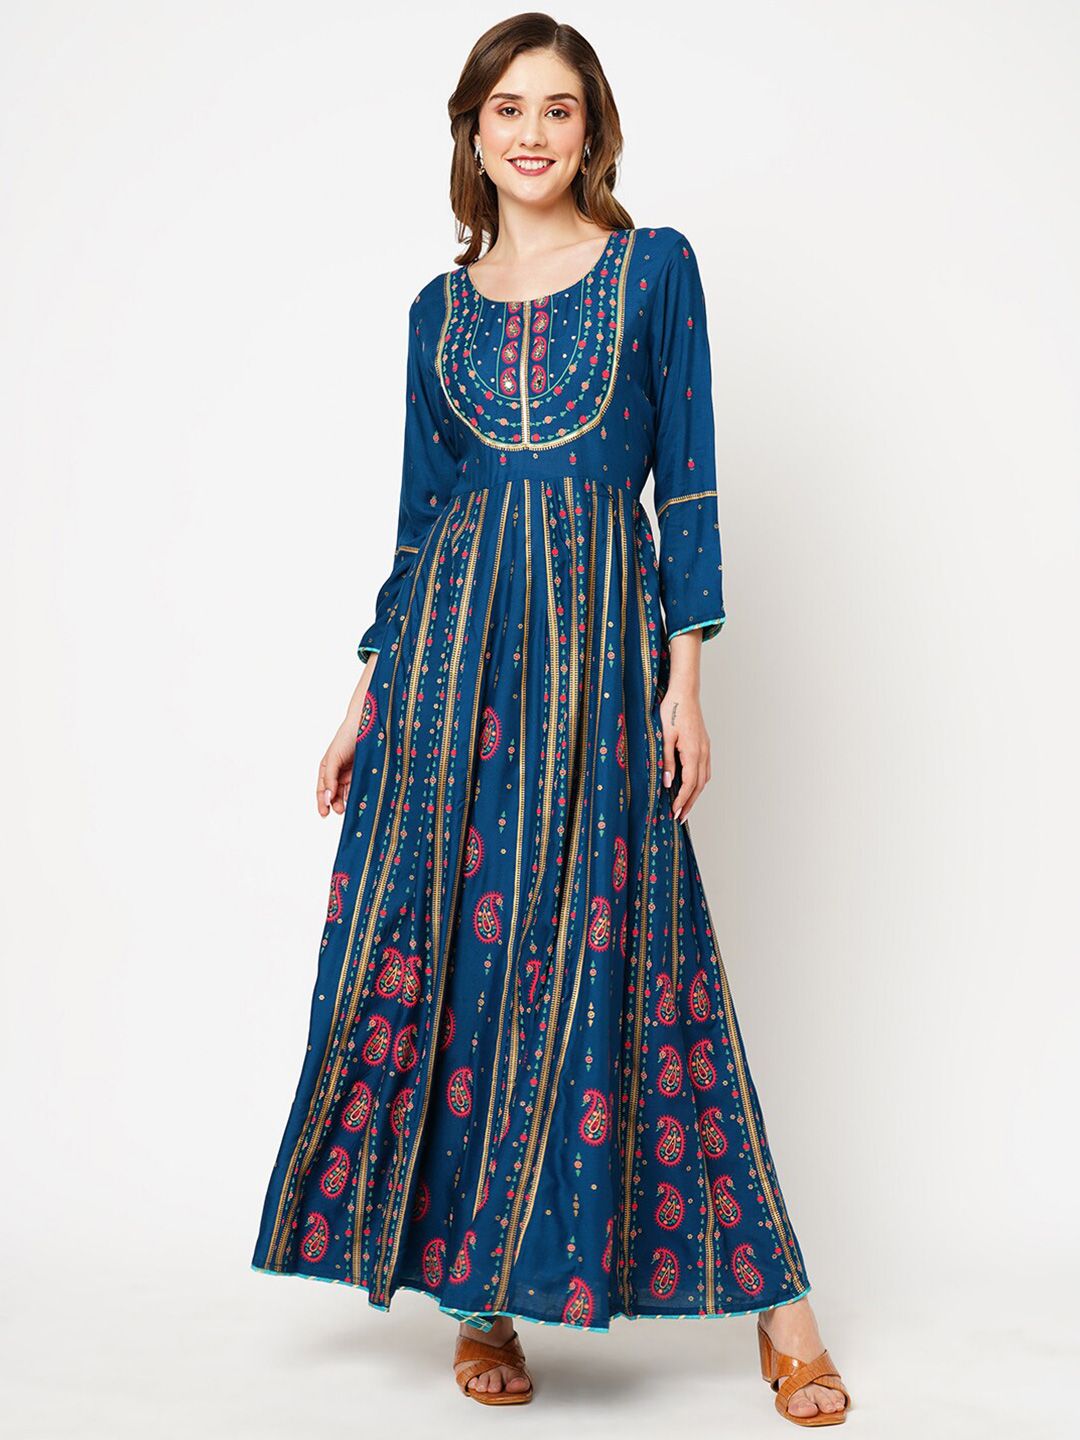 Kiana Ethnic Motif Printed V-Neck Maxi Dress Price in India